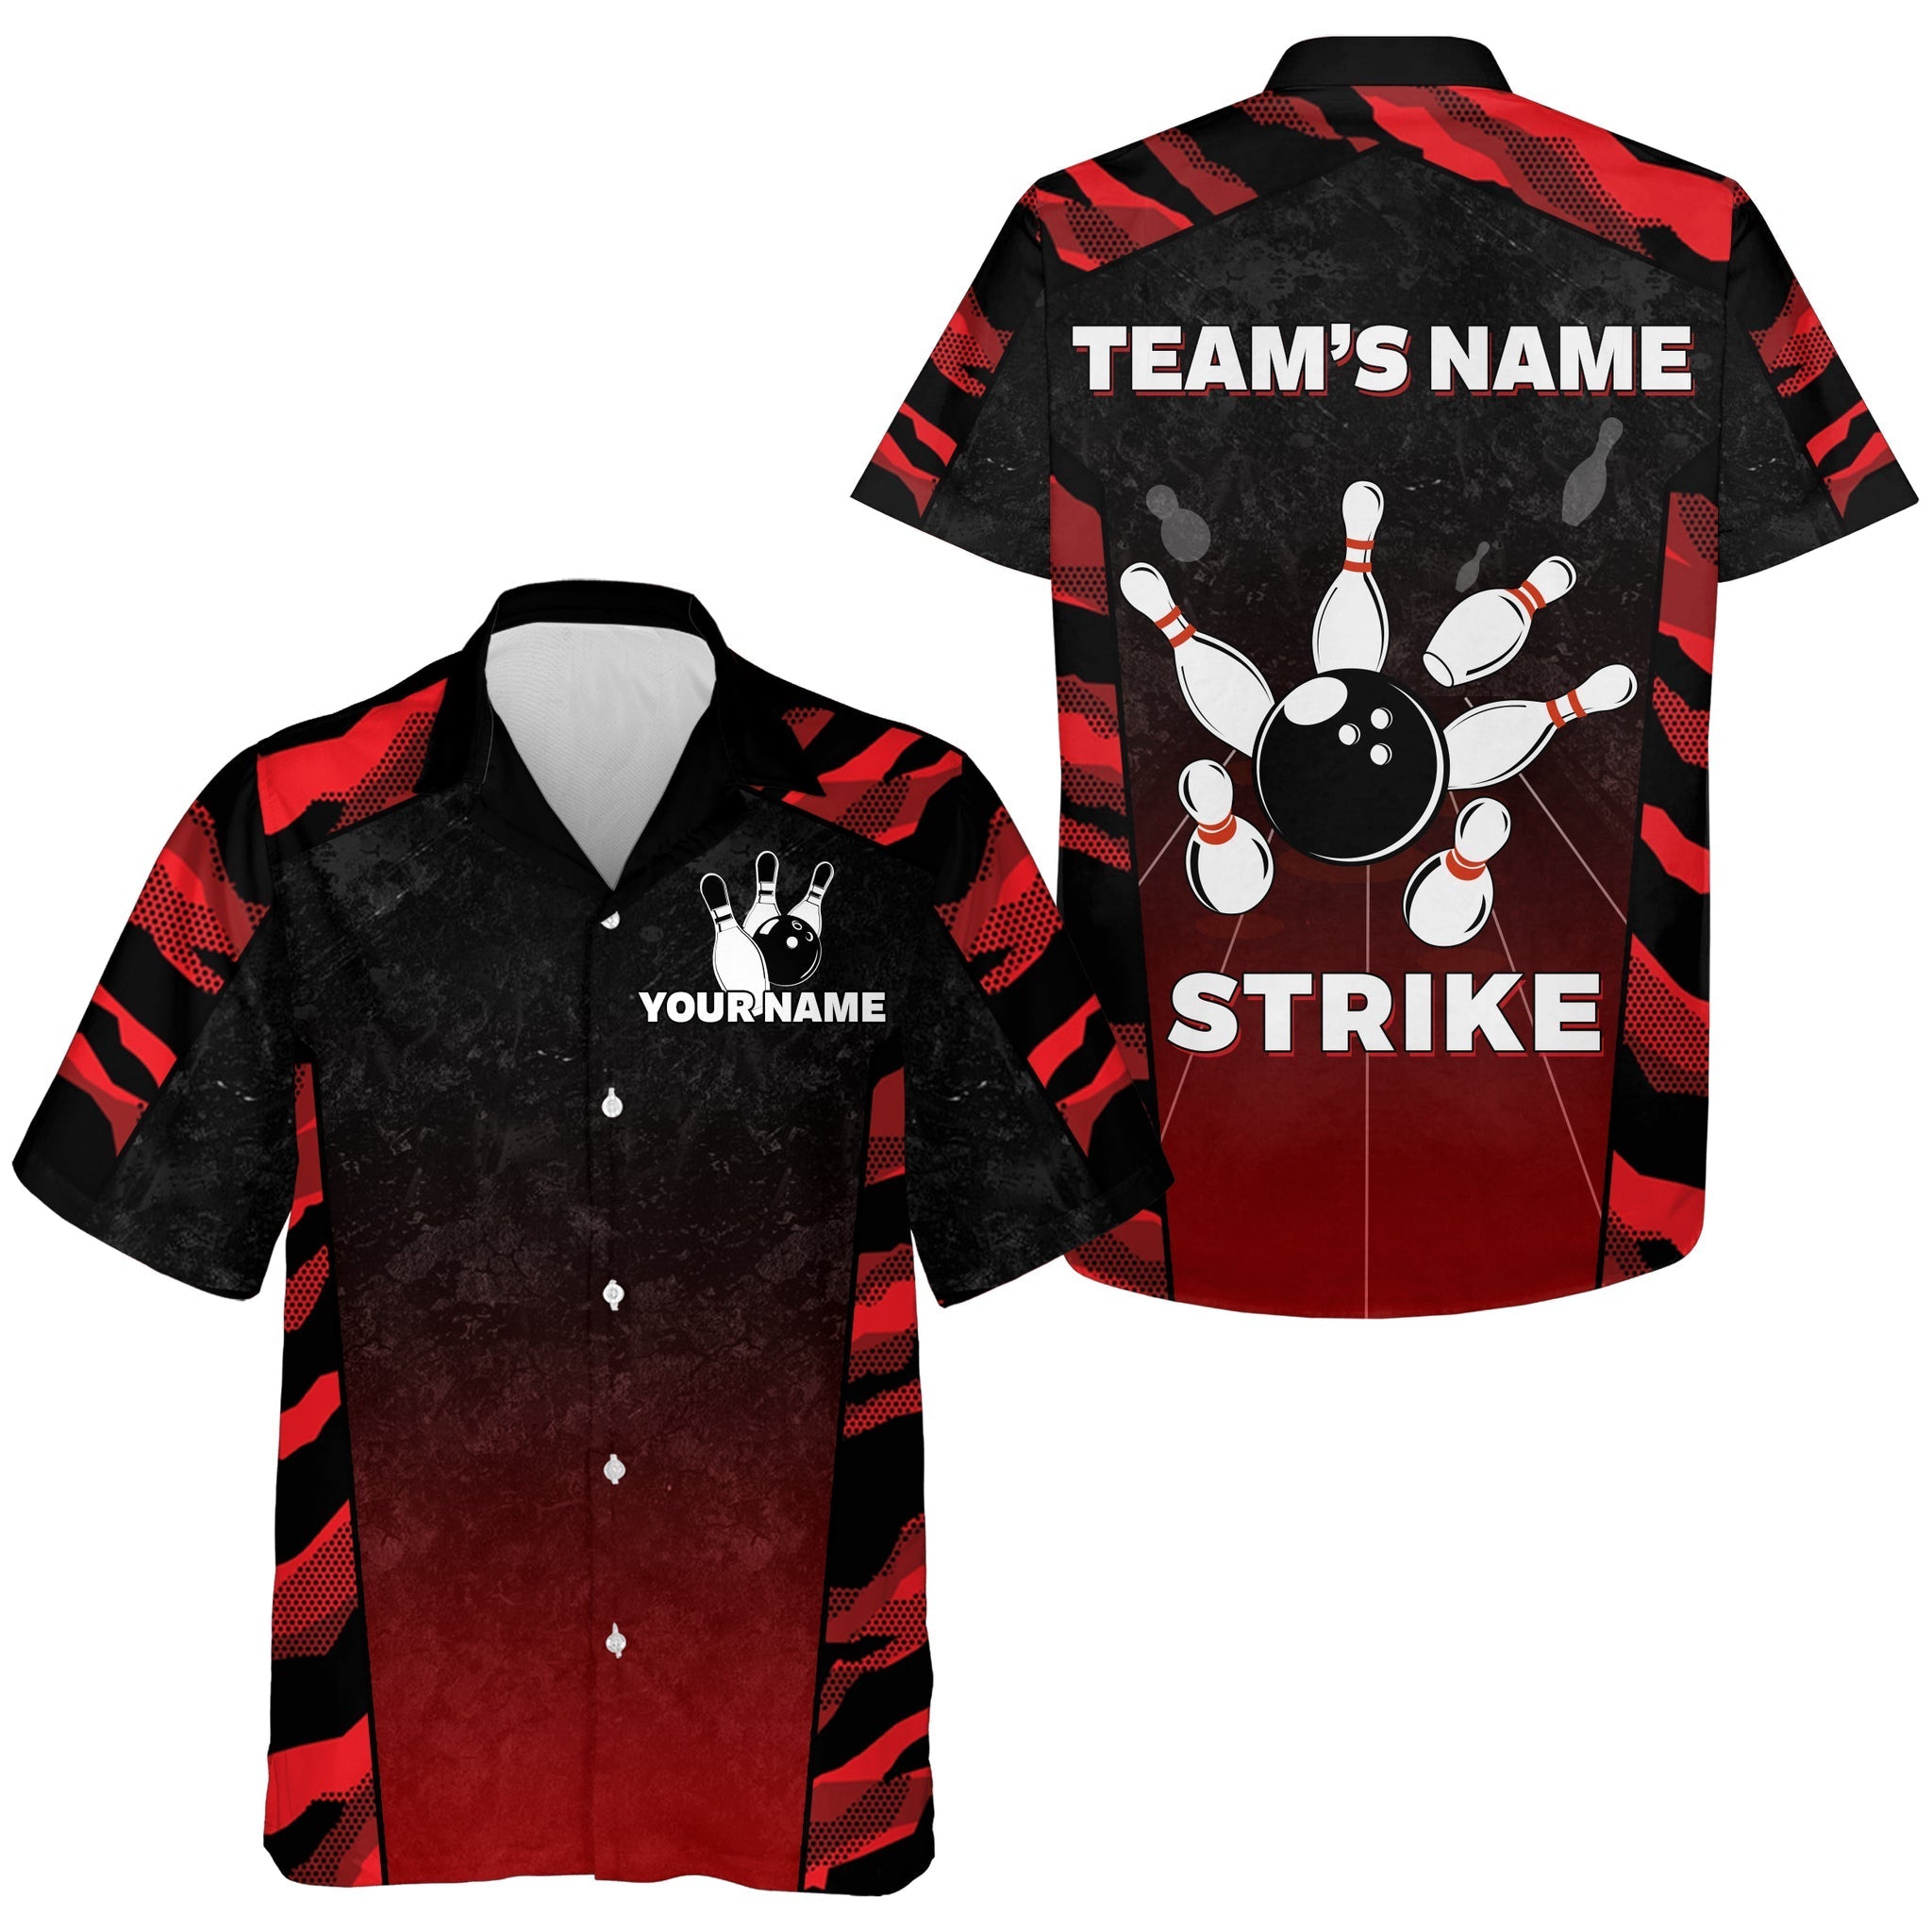 Red Camo Hawaiian Bowling Shirt For Men/ Custom Name Team Name Bowling Jersey Strike Bowling Shirt